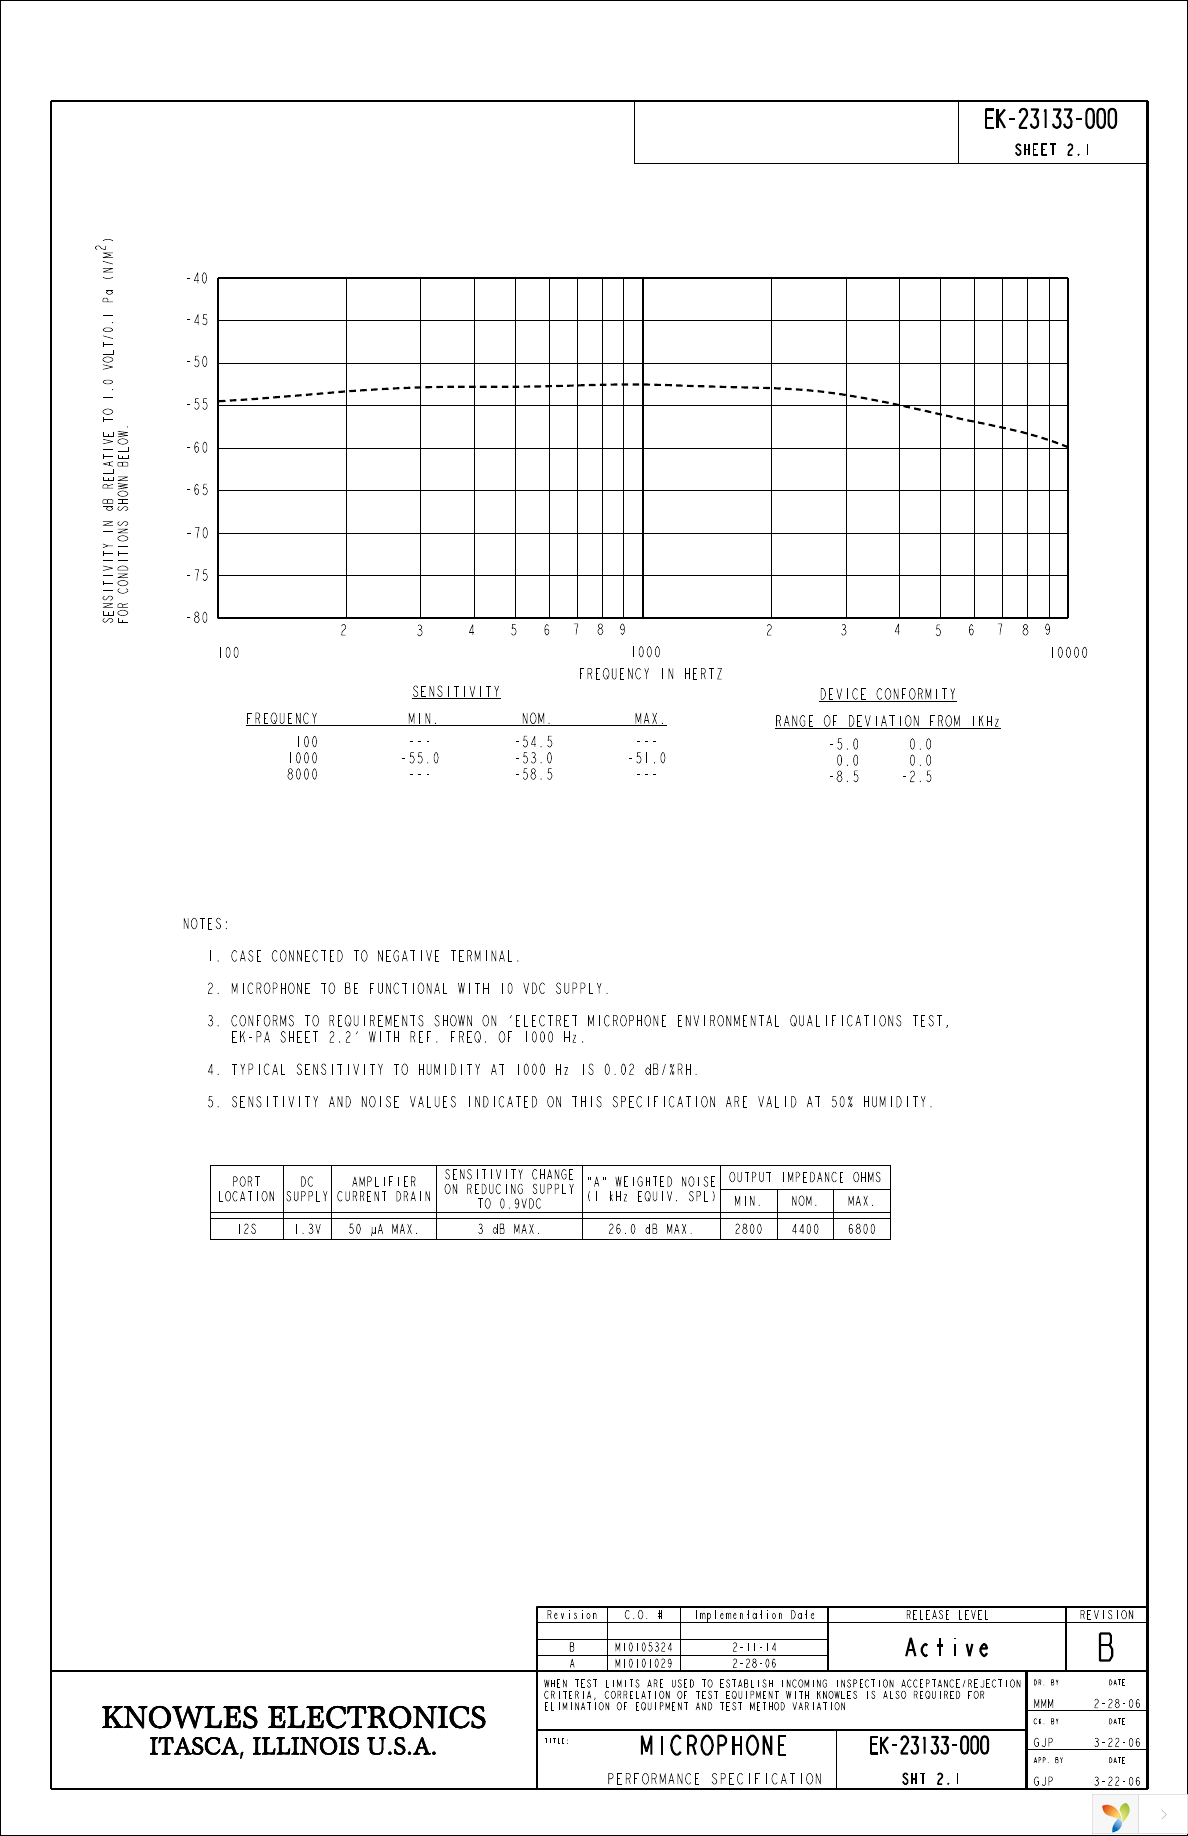 EK-23133-000 Page 2